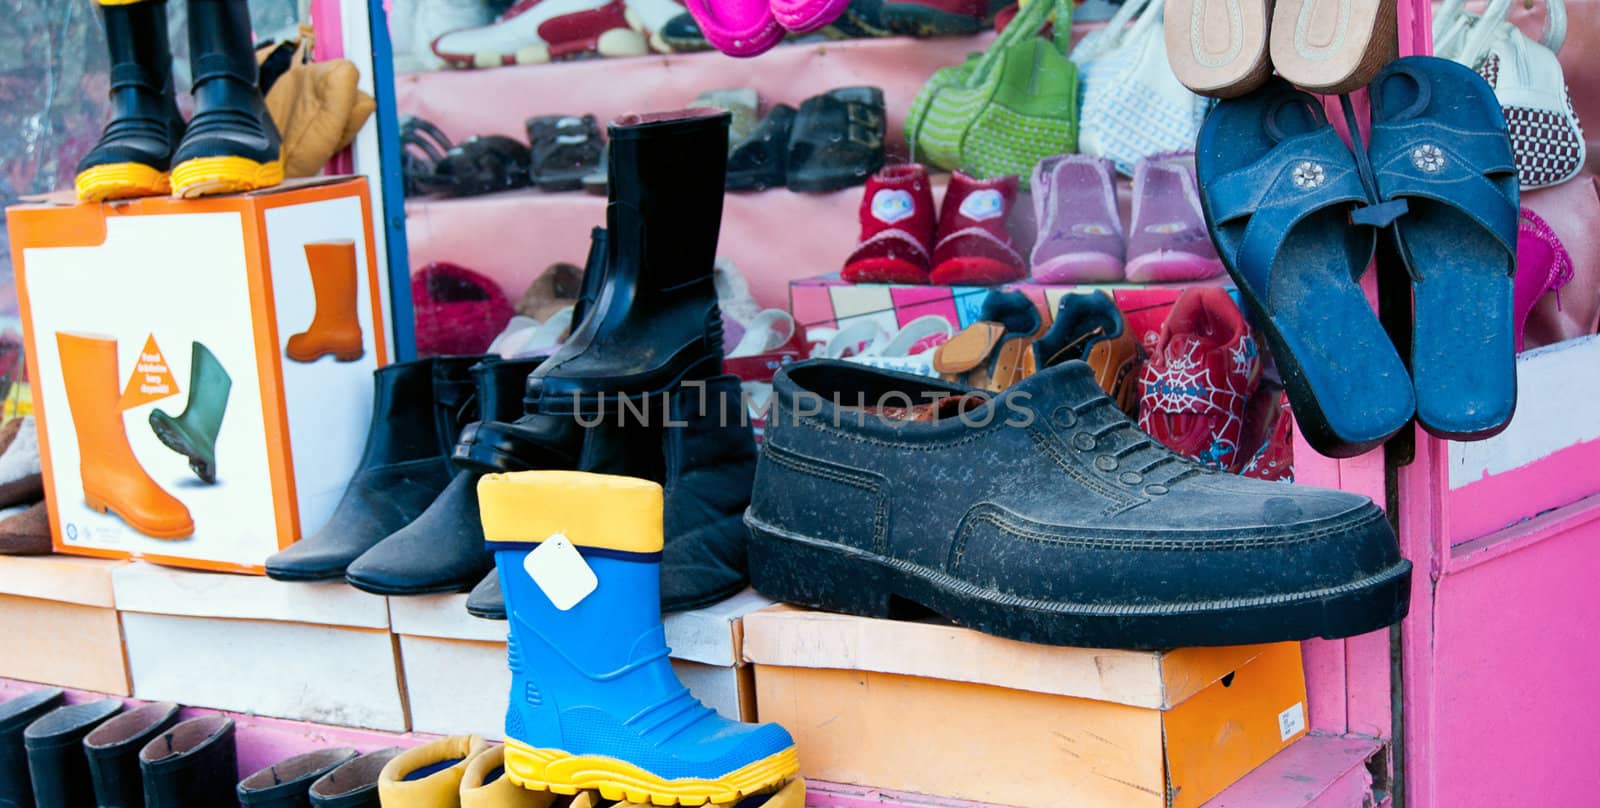 Footwear shop in Turkey by Denovyi